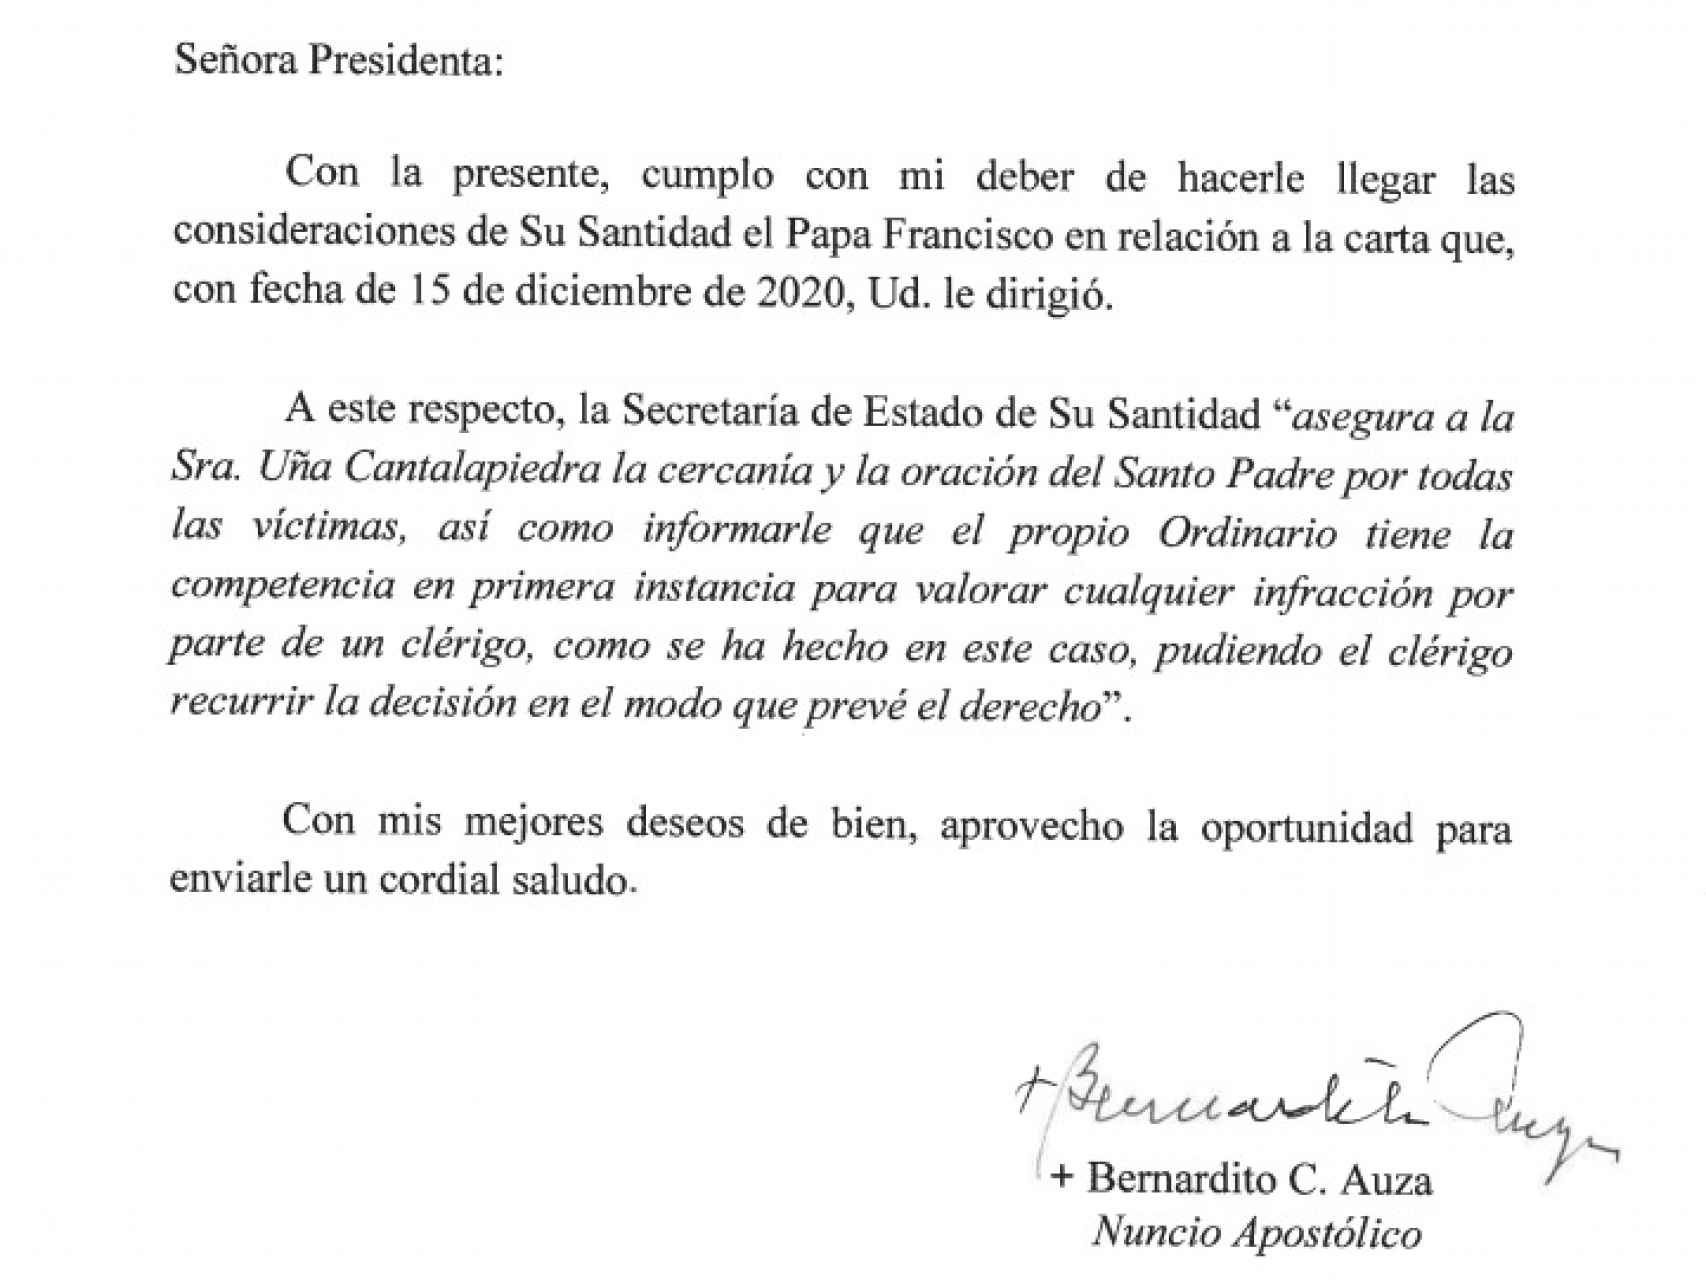 La carta de respuesta emitida desde la Santa Sede.